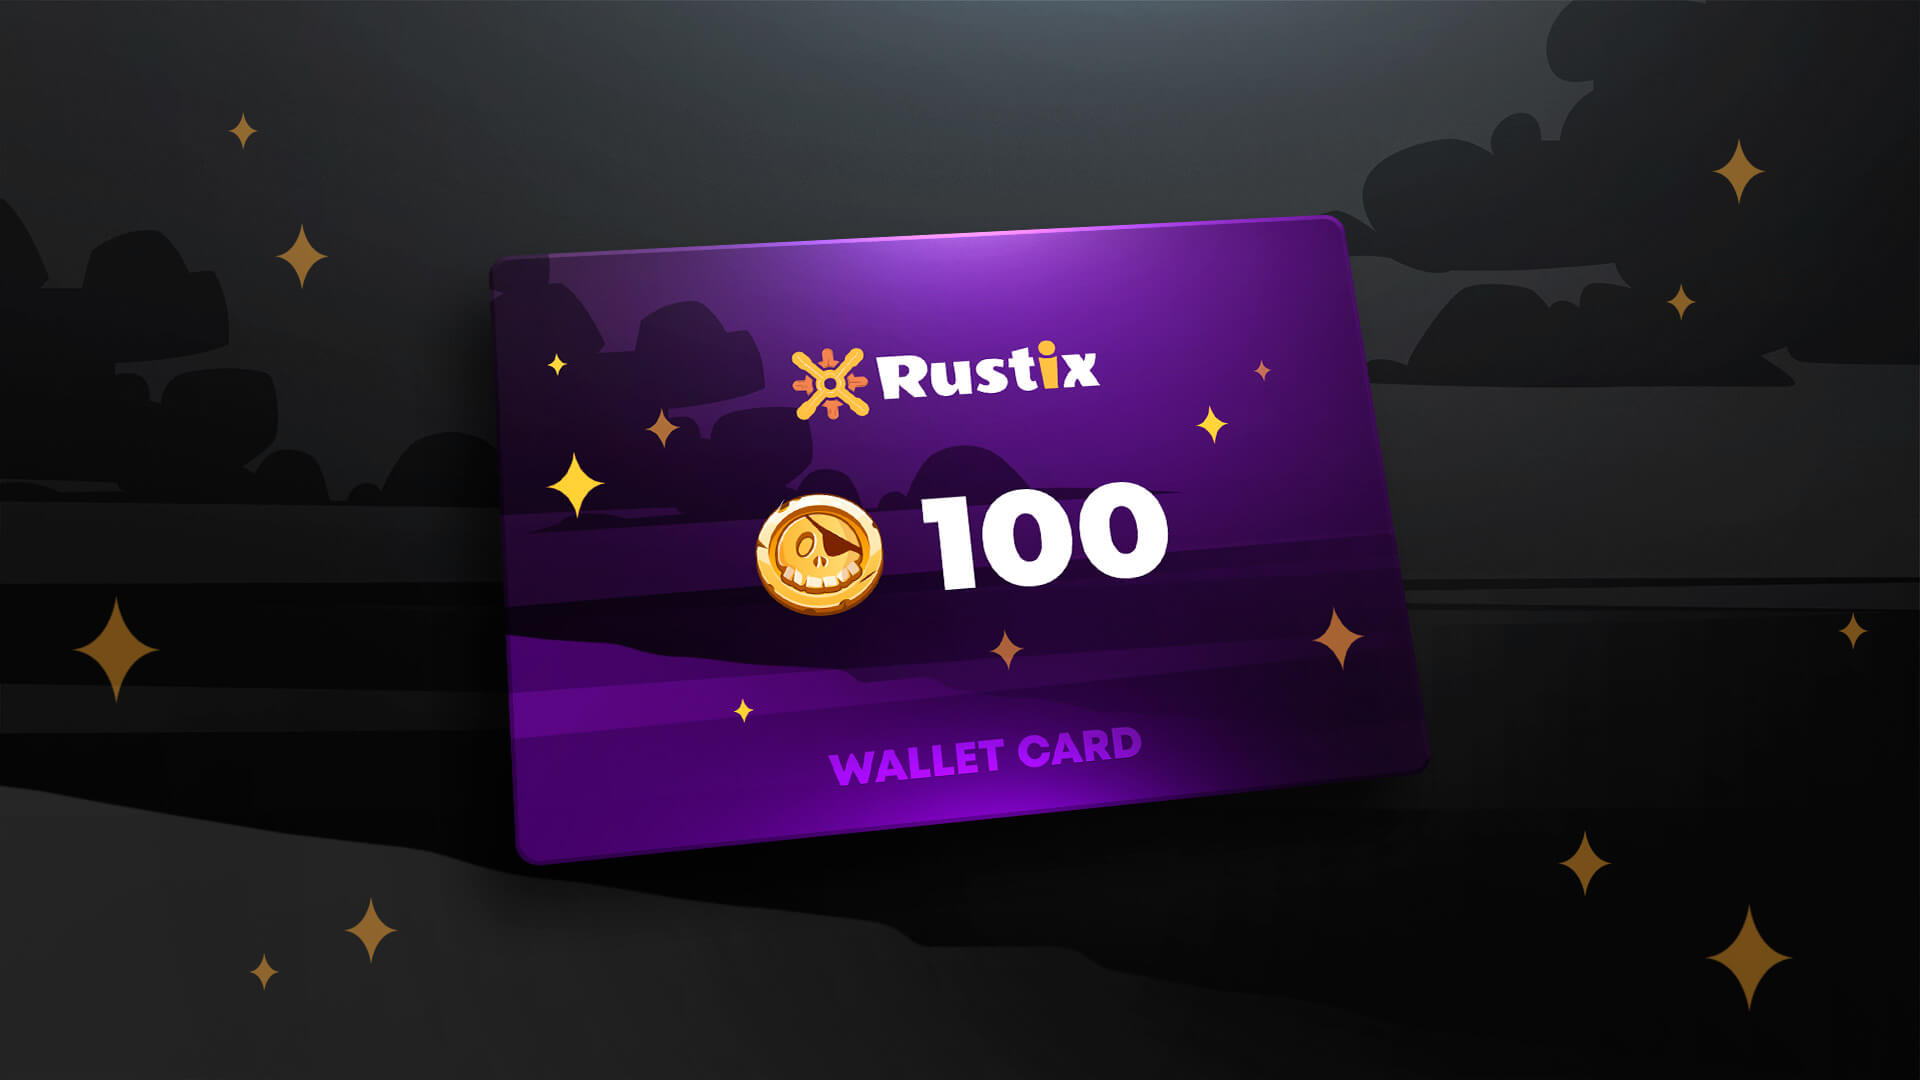 Rustix.io 100 USD Wallet Card Code [USD 113]